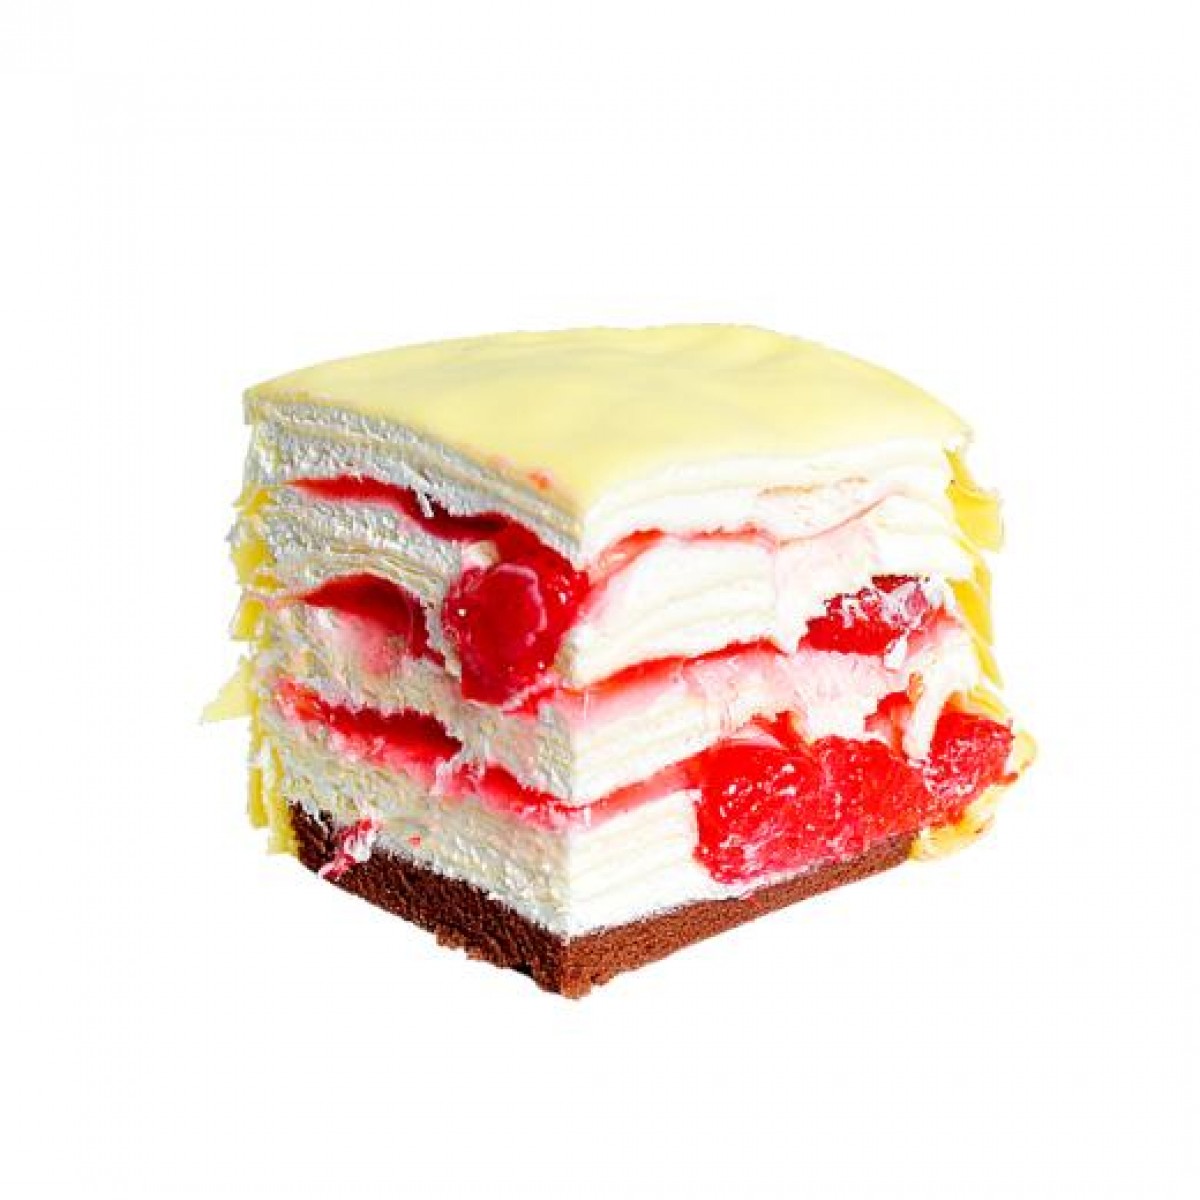 法滋蛋糕-草莓千层